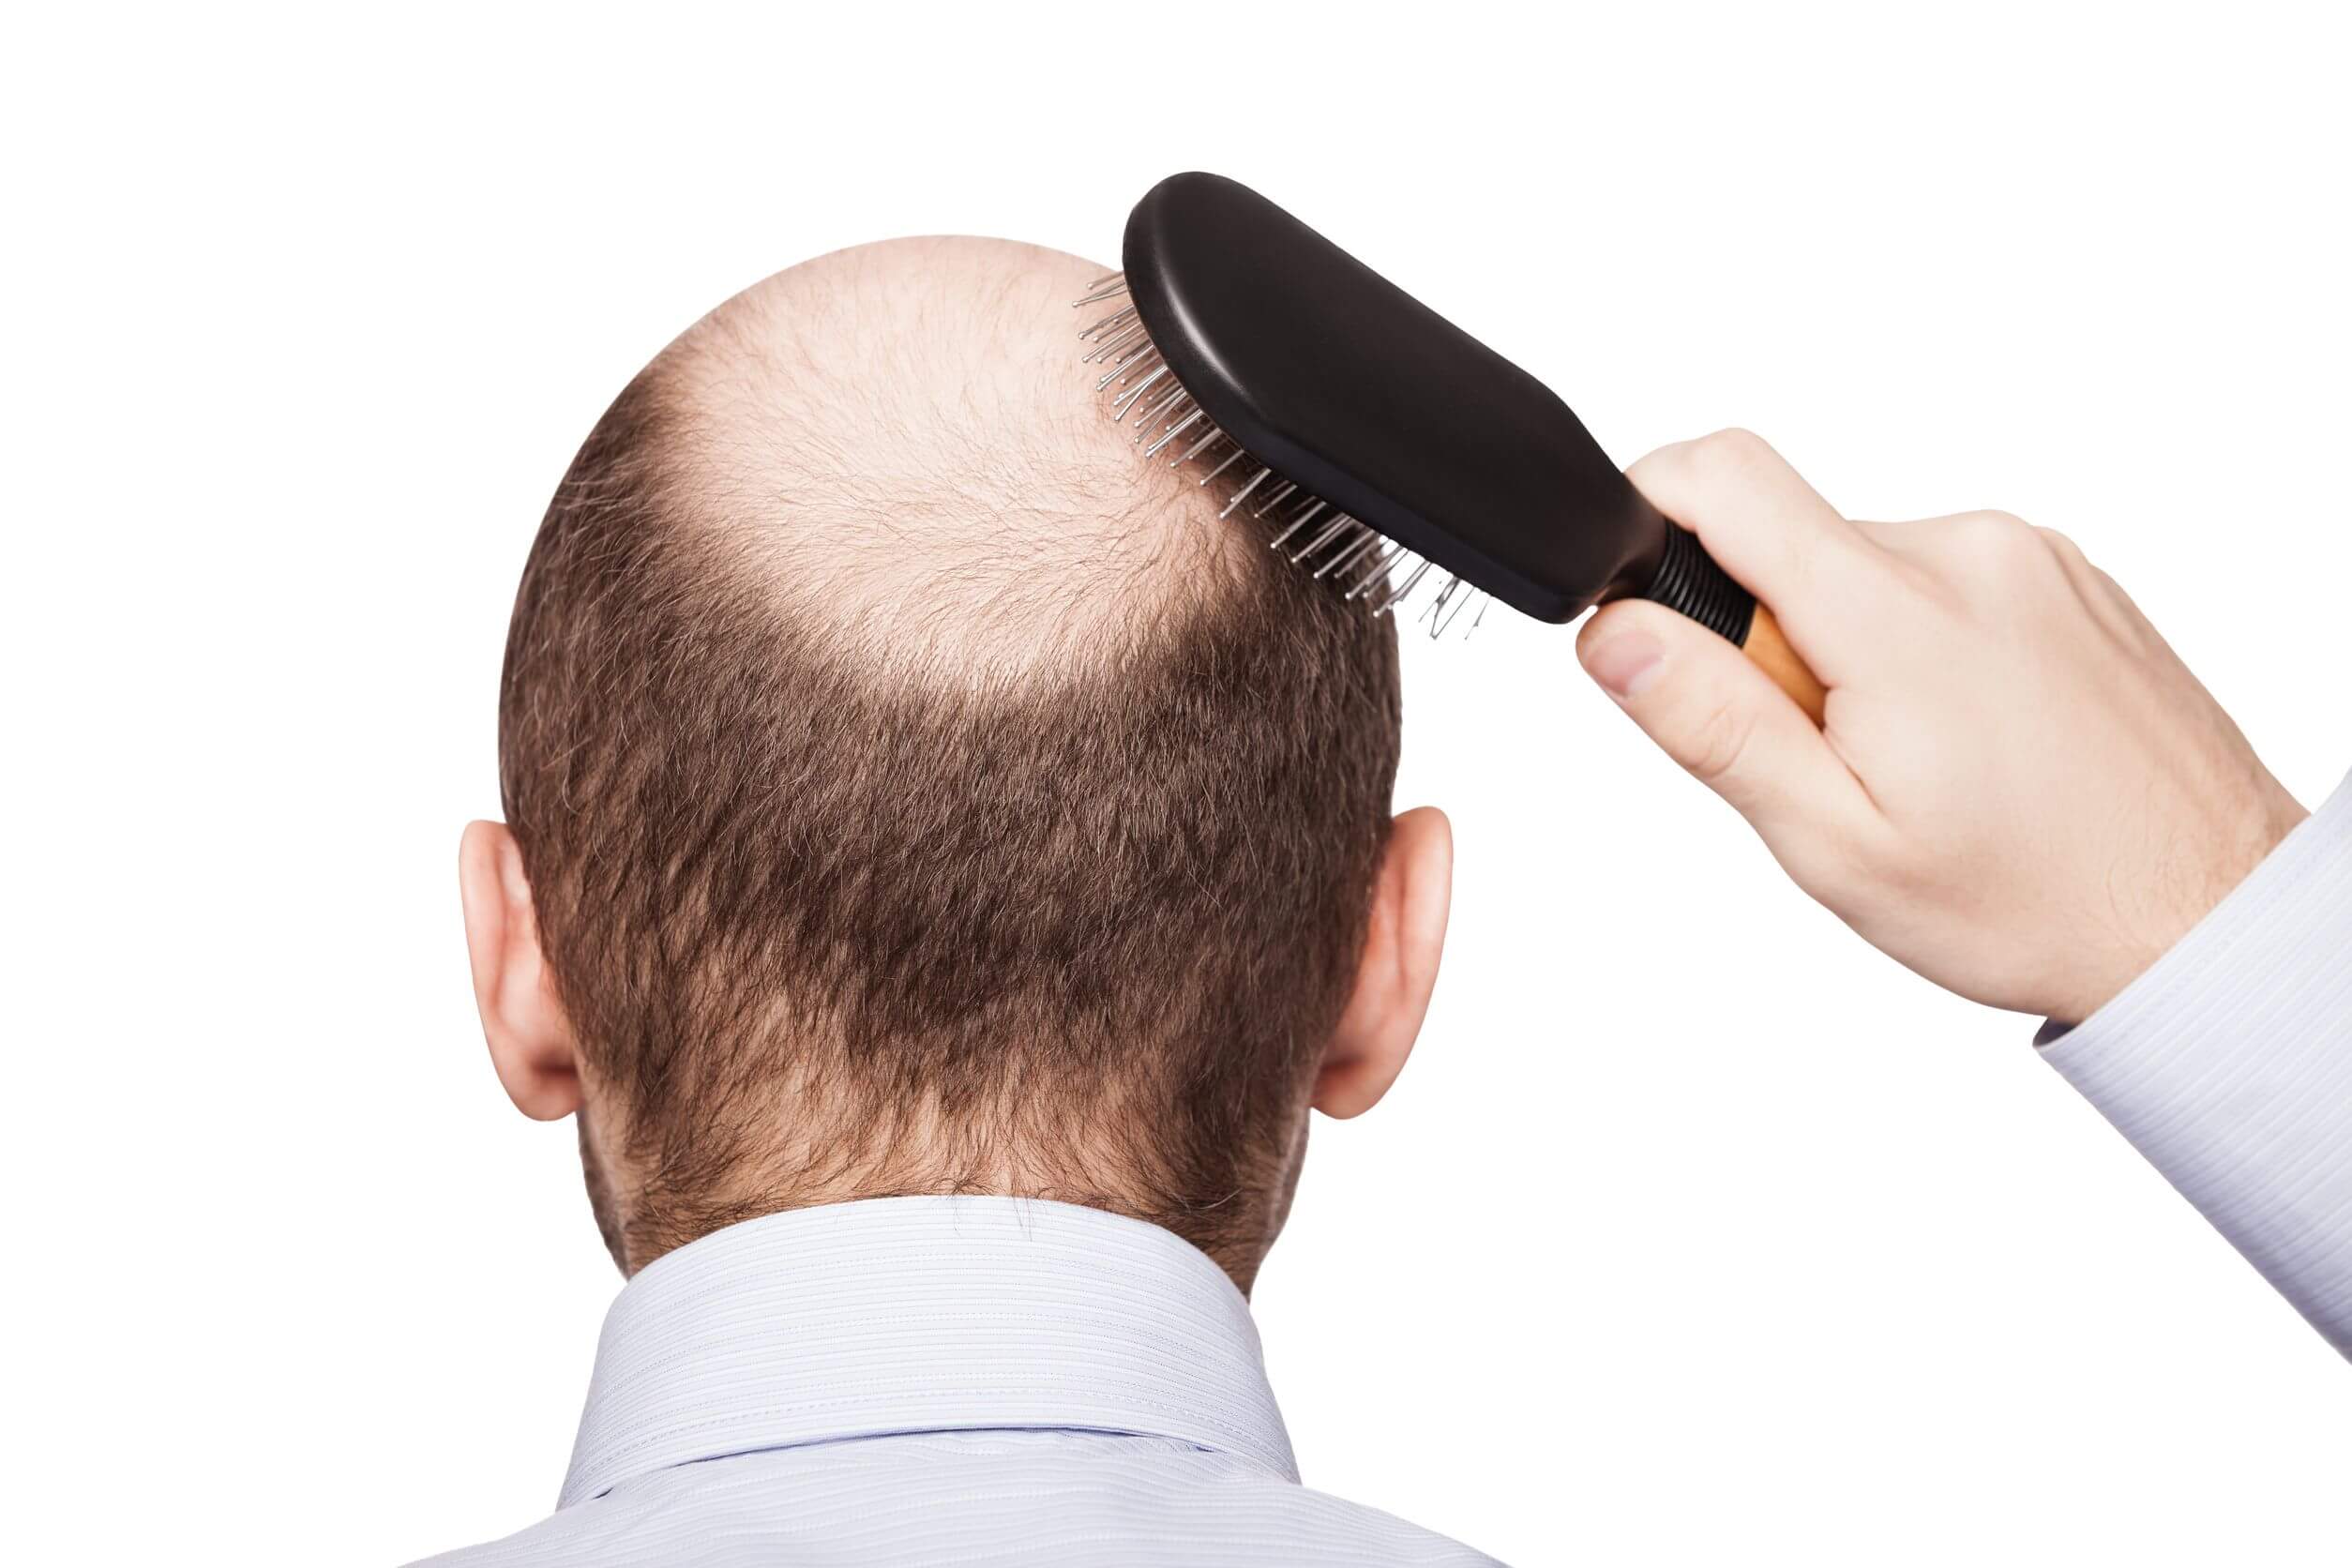 Las enfermedades comunes en hombres incluyen la alopecia androgénica.